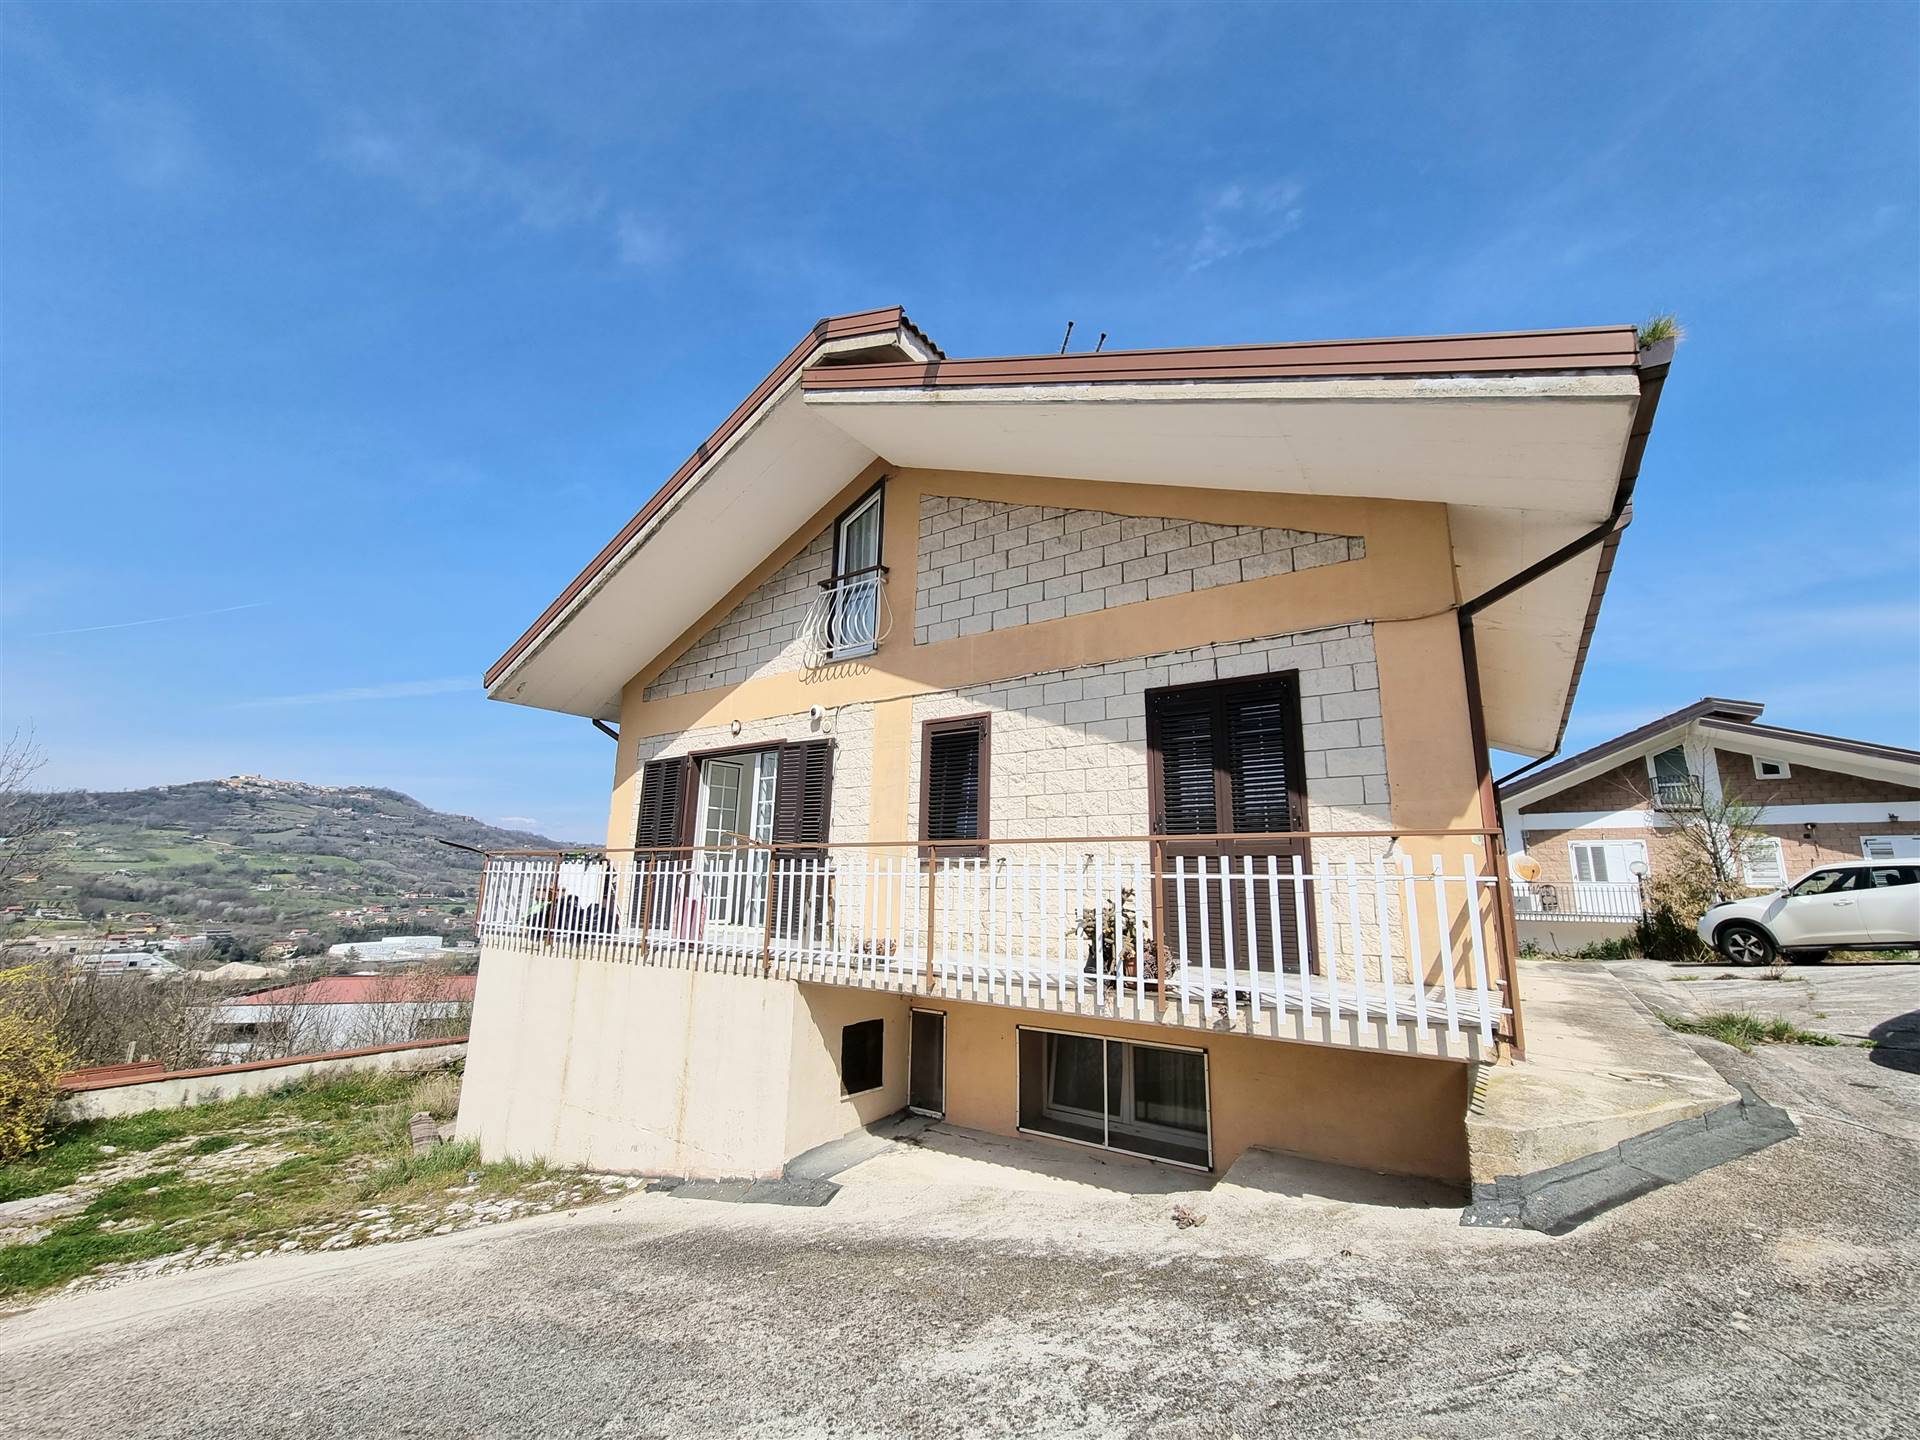 Villa in vendita a Manocalzati, 8 locali, prezzo € 170.000 | CambioCasa.it